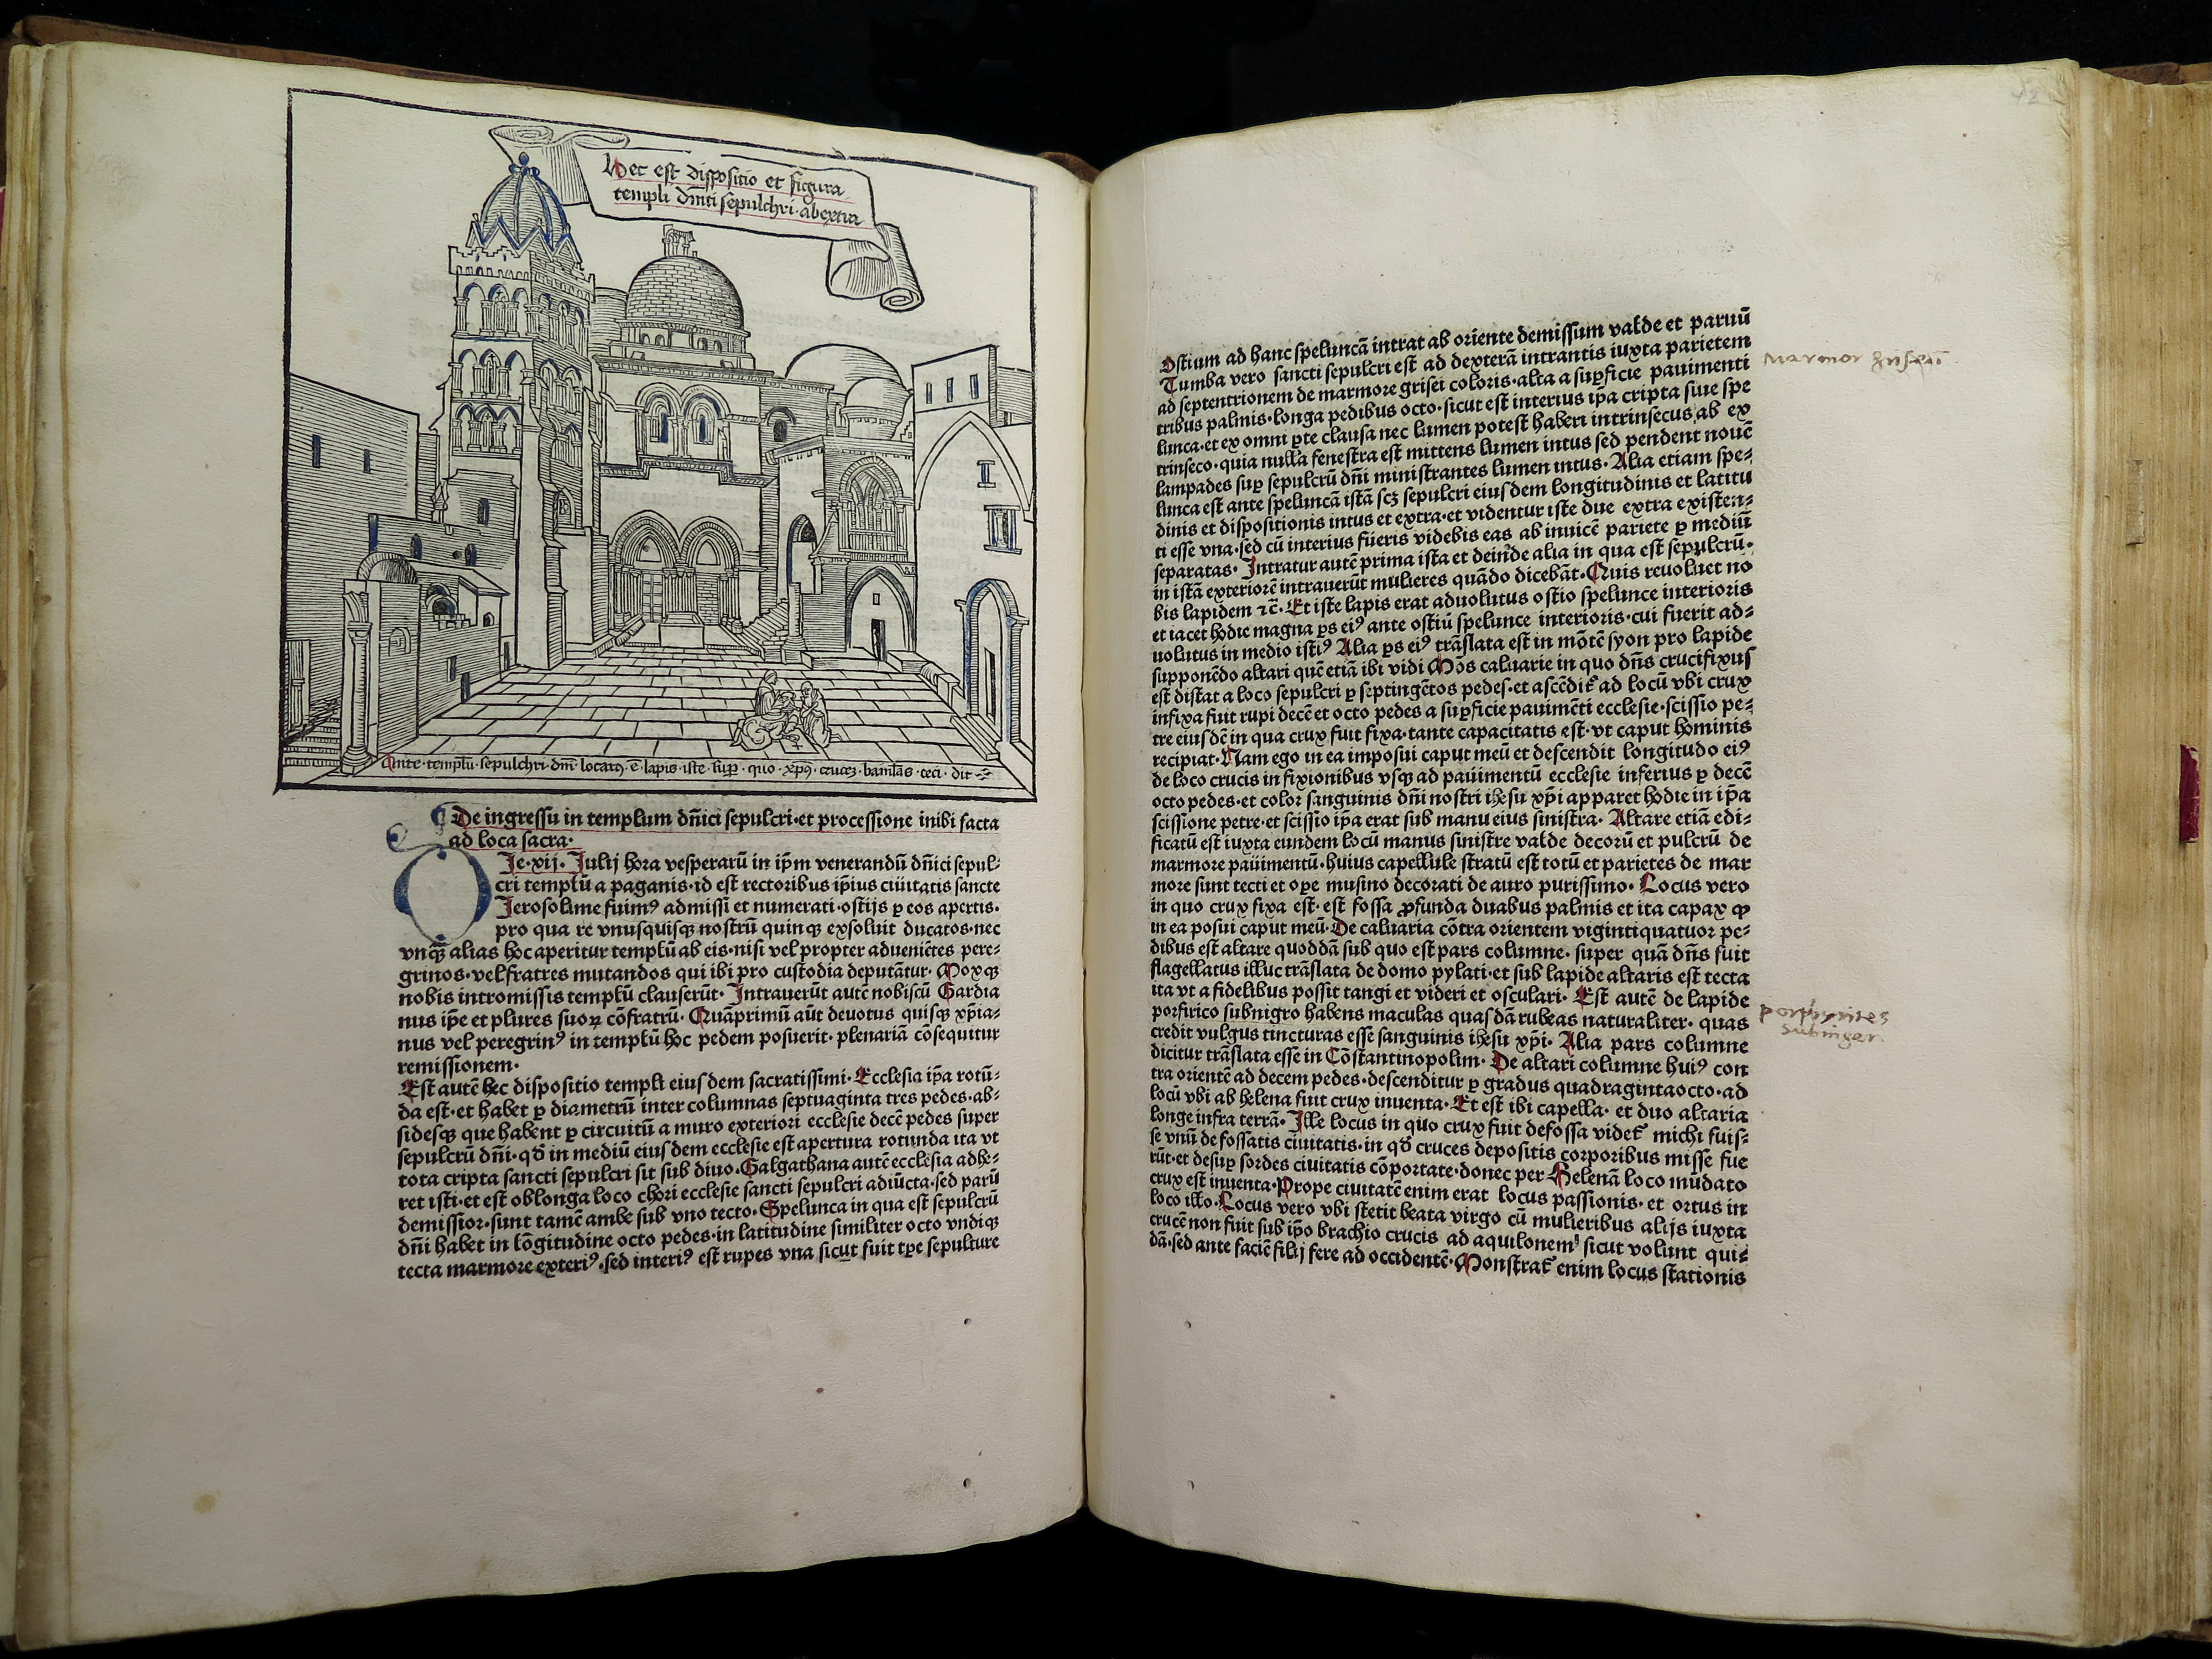 Bernhard von Breydenbach, Peregrinatio in terrram sanctam, Mainz 1486. © Universitätsbibliothek Basel